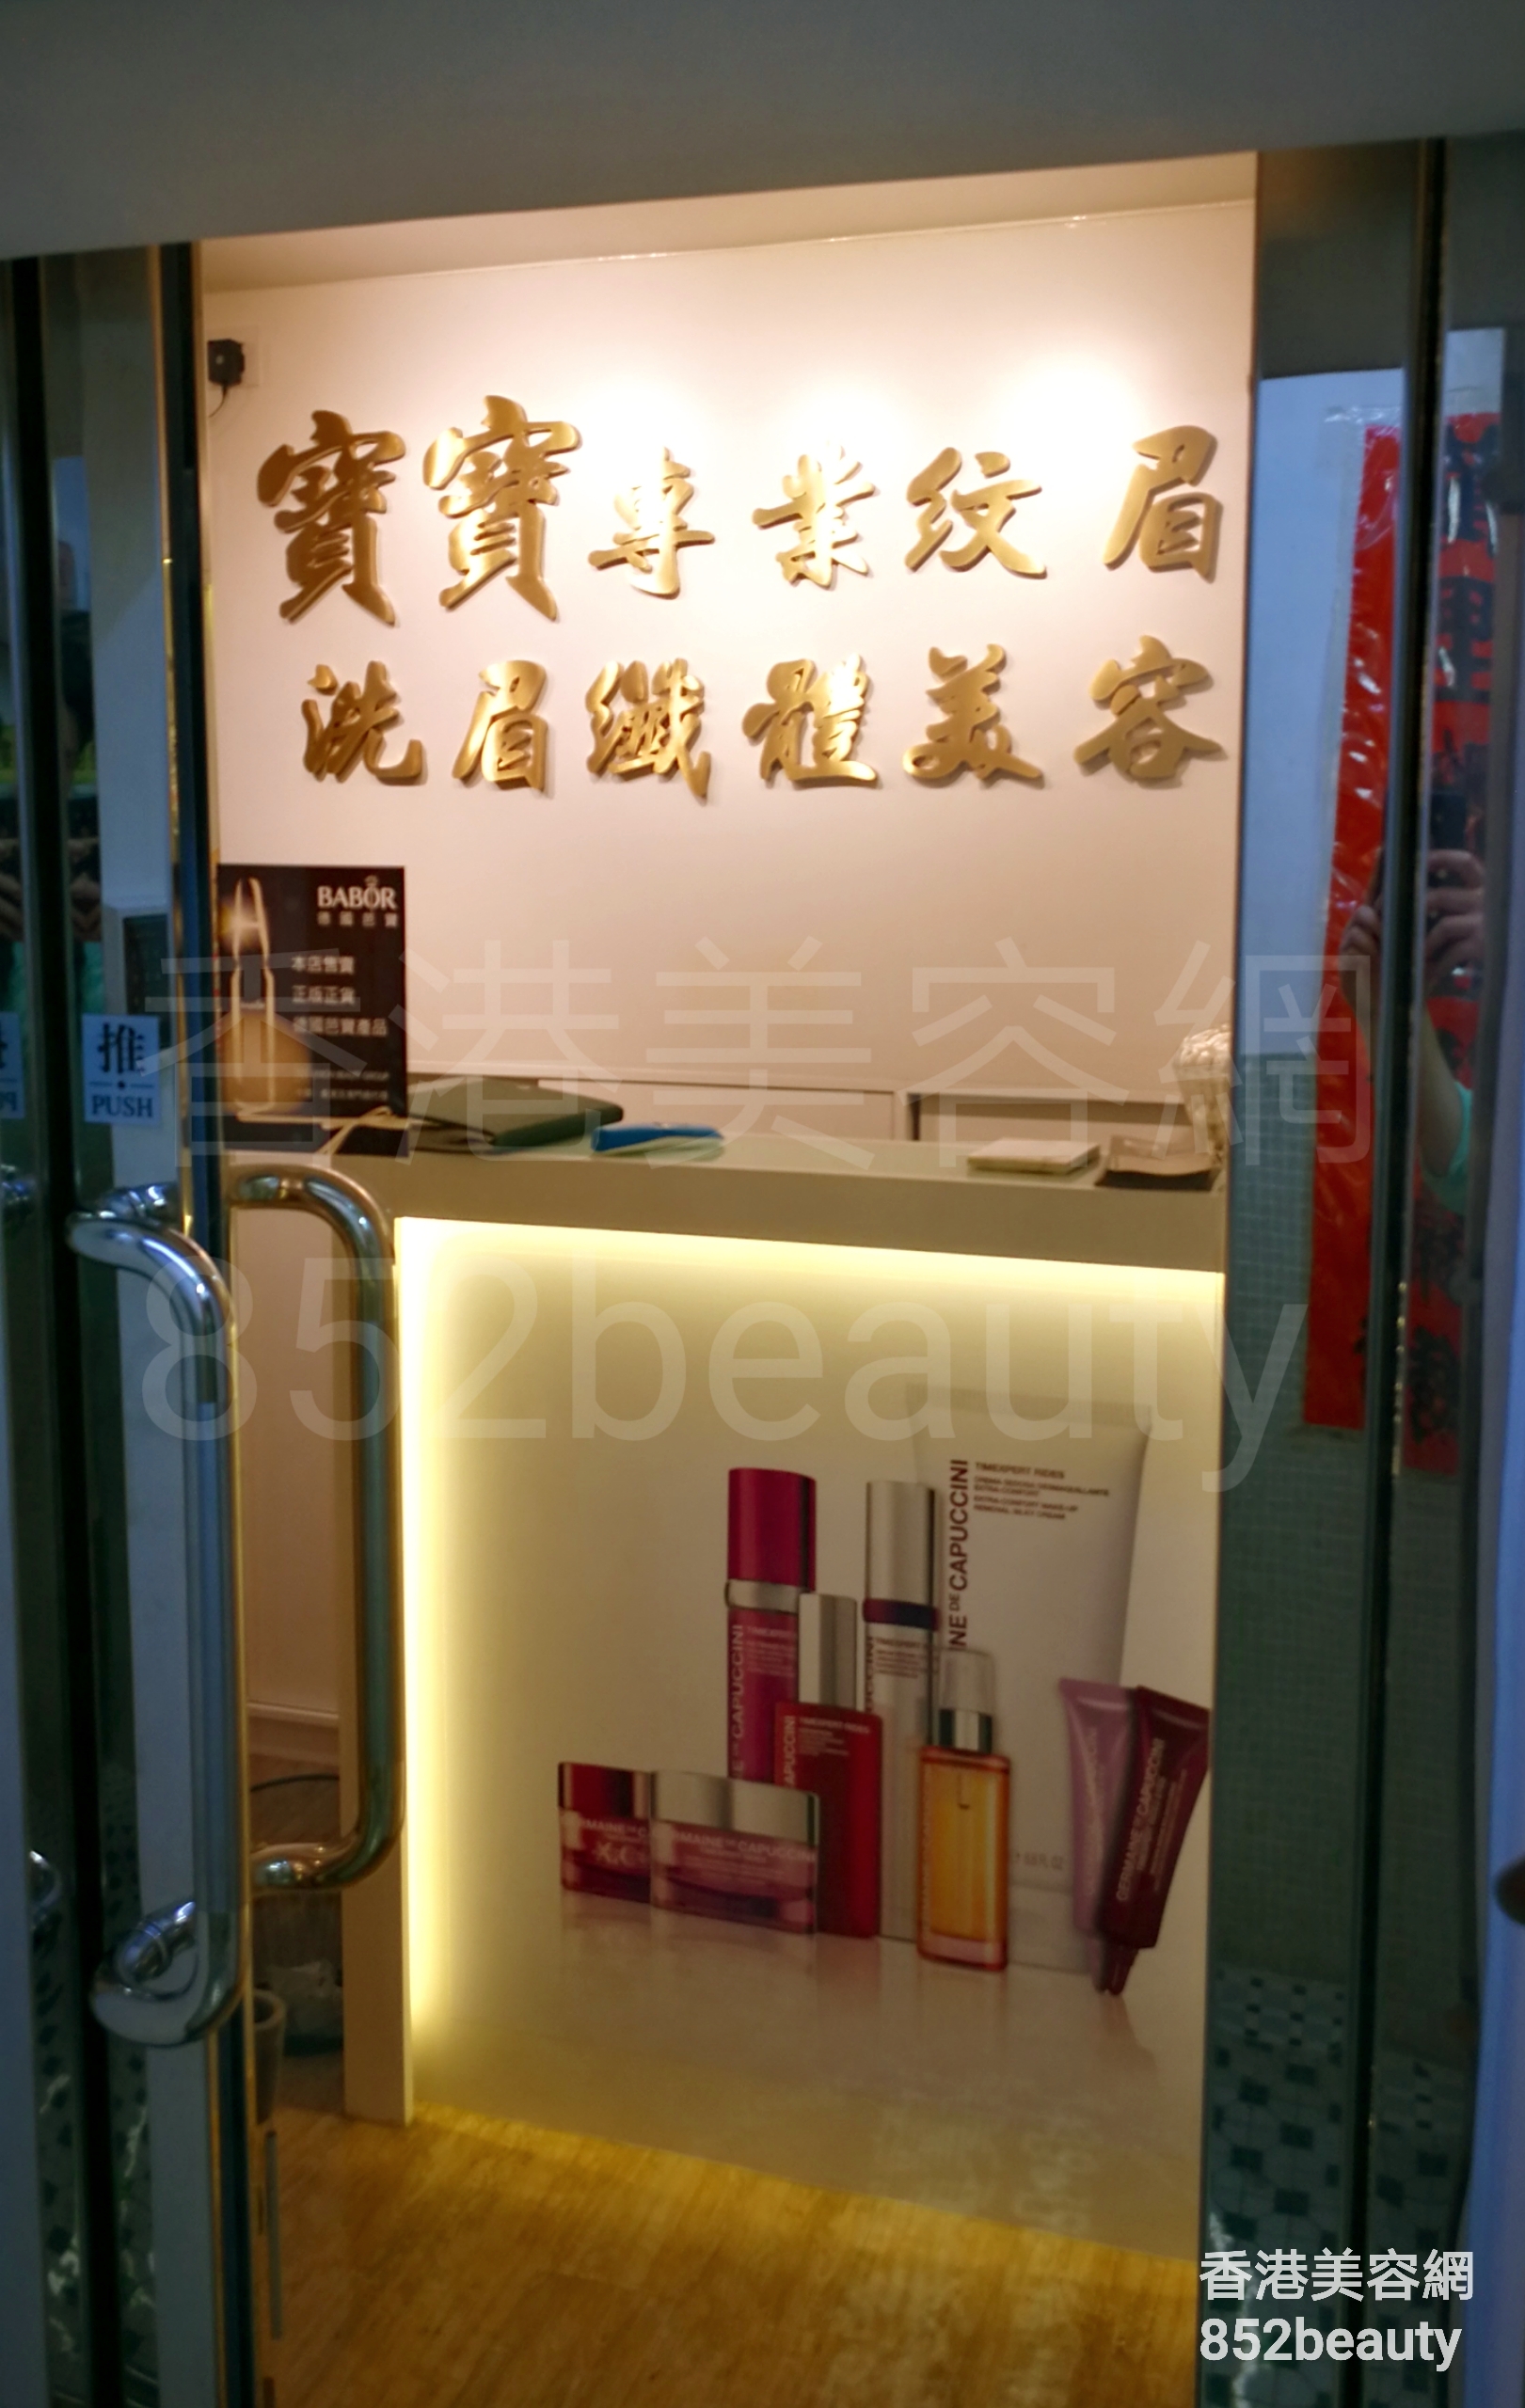 香港美容網 Hong Kong Beauty Salon 美容院 / 美容師: 寶寶美容